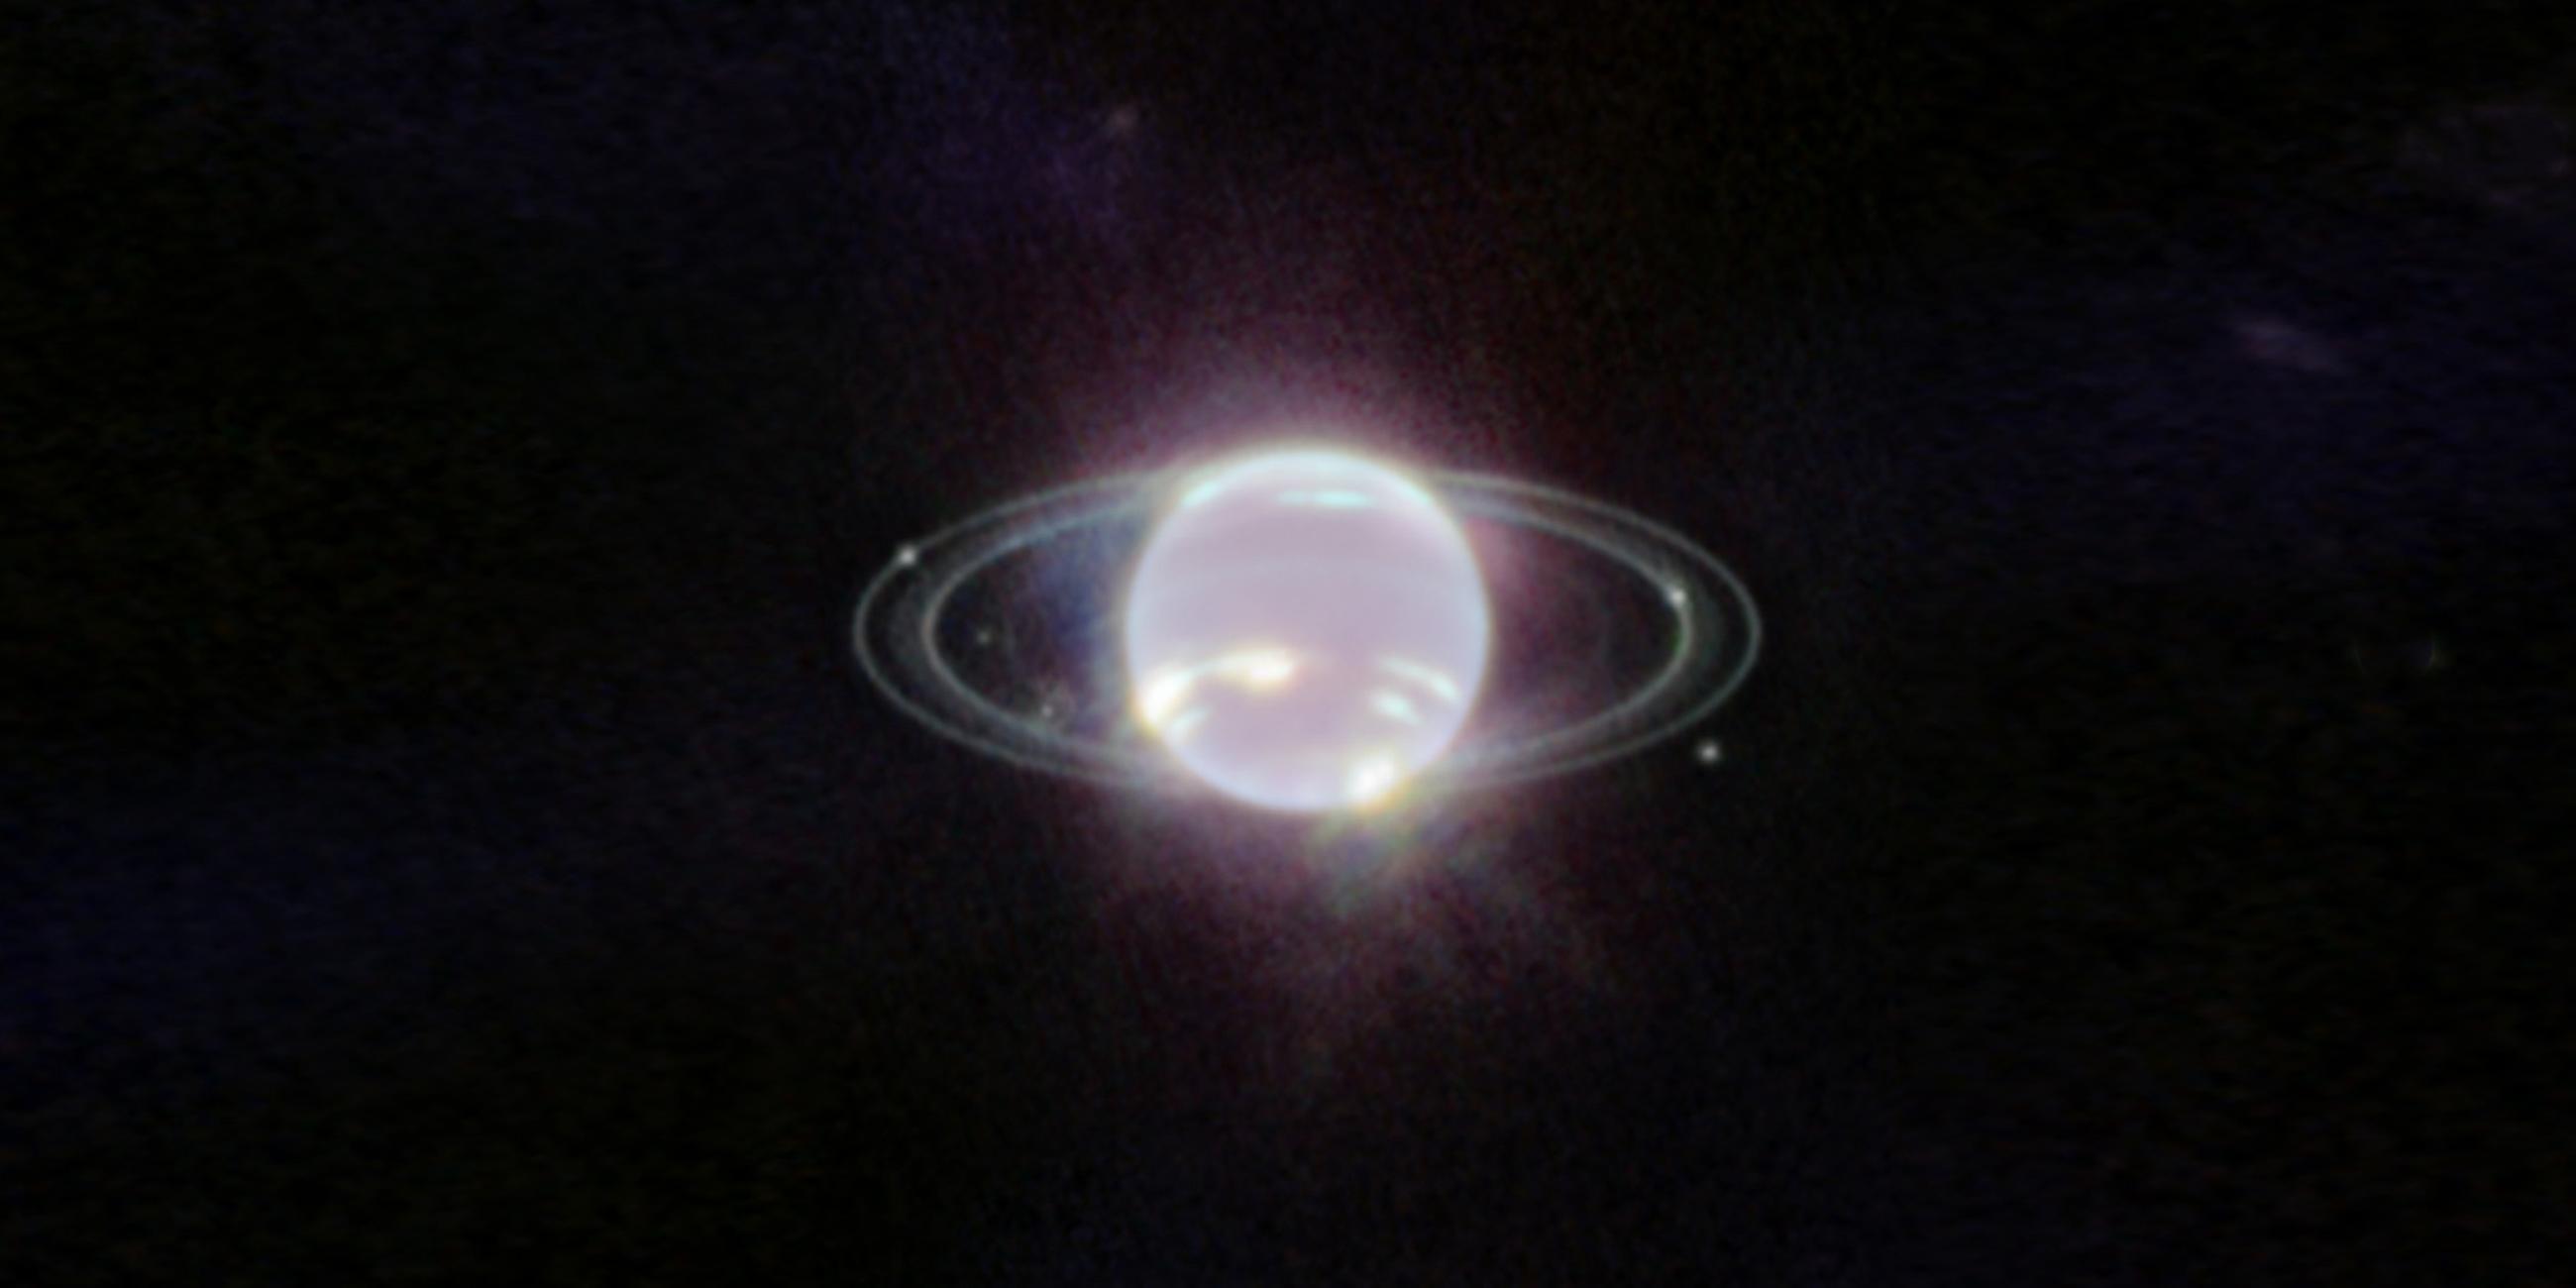 Der Planet Neptun schwebt im Zentrum einiger Ringe